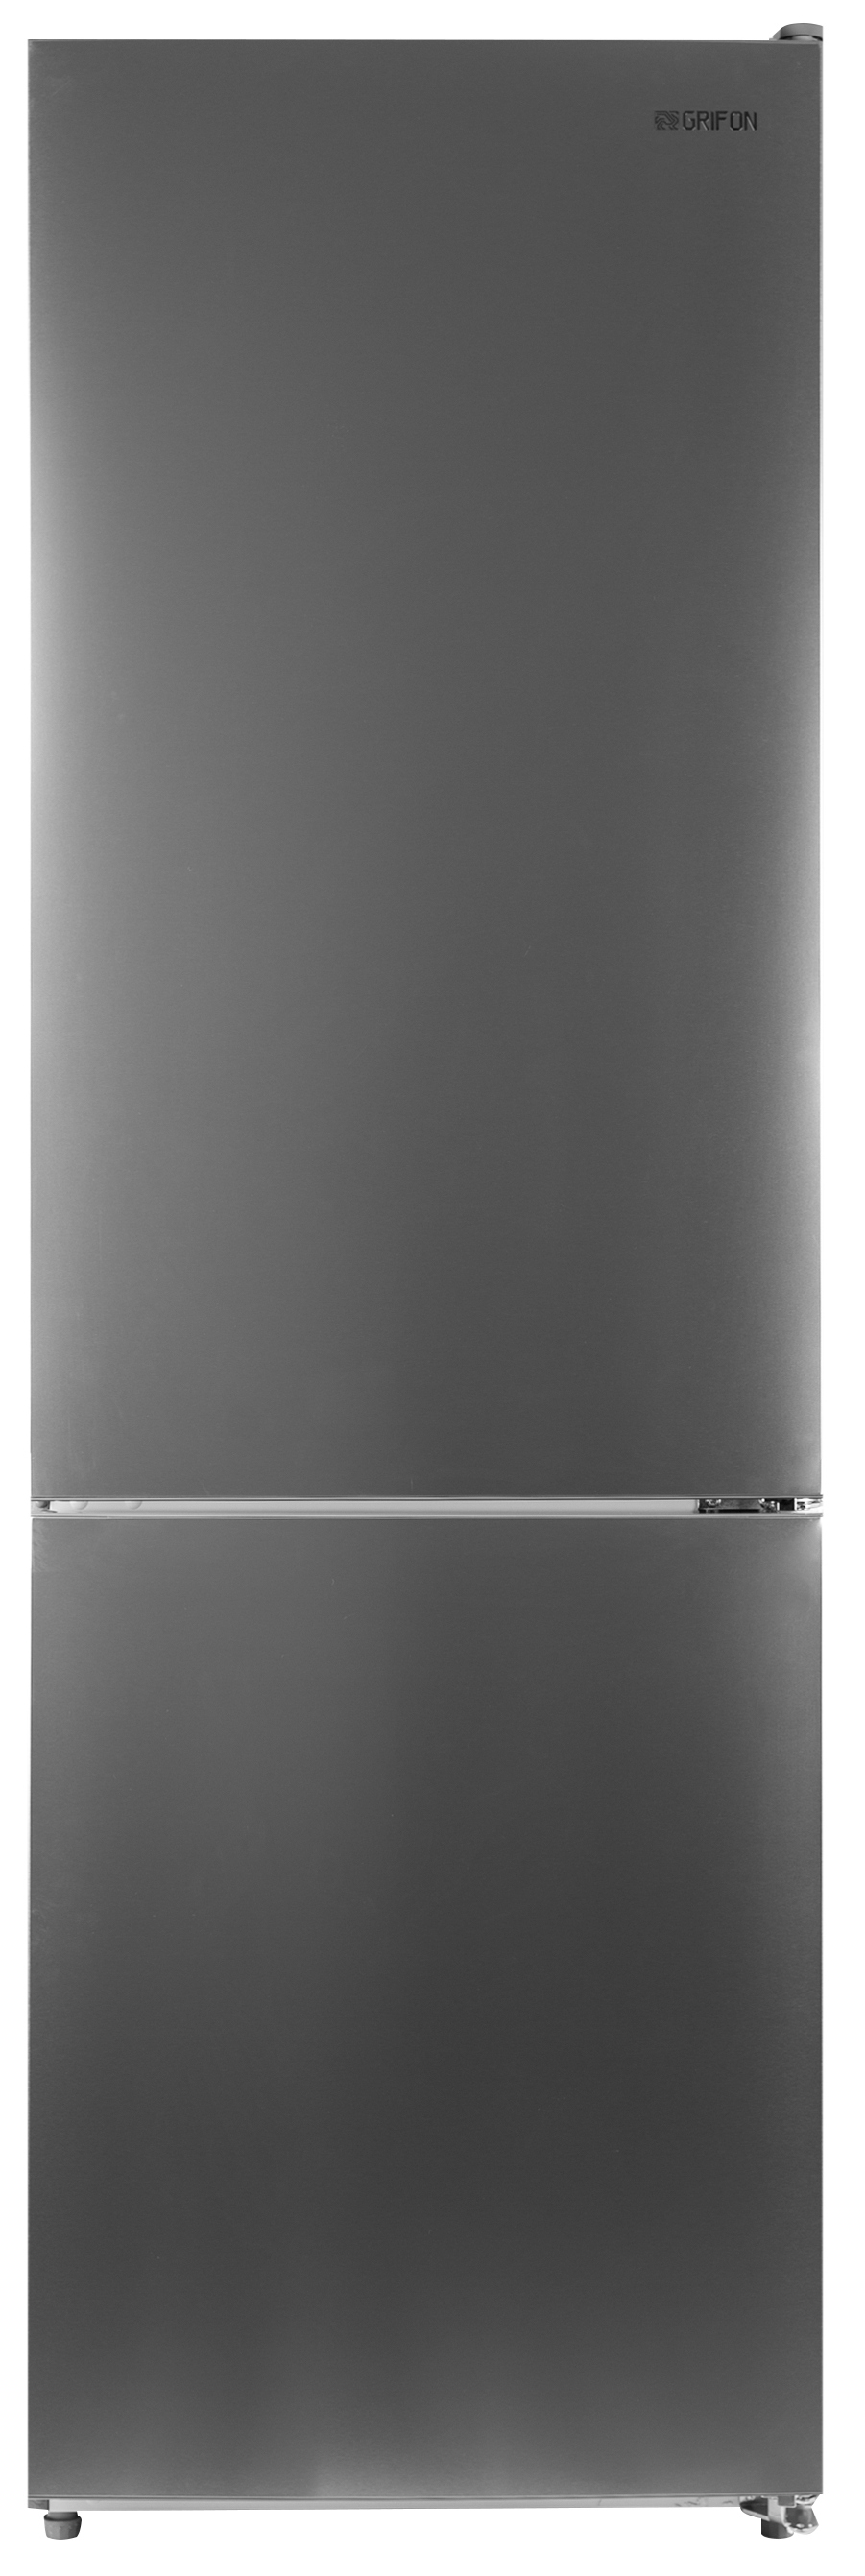 Холодильник Grifon NFN-185X в интернет-магазине, главное фото